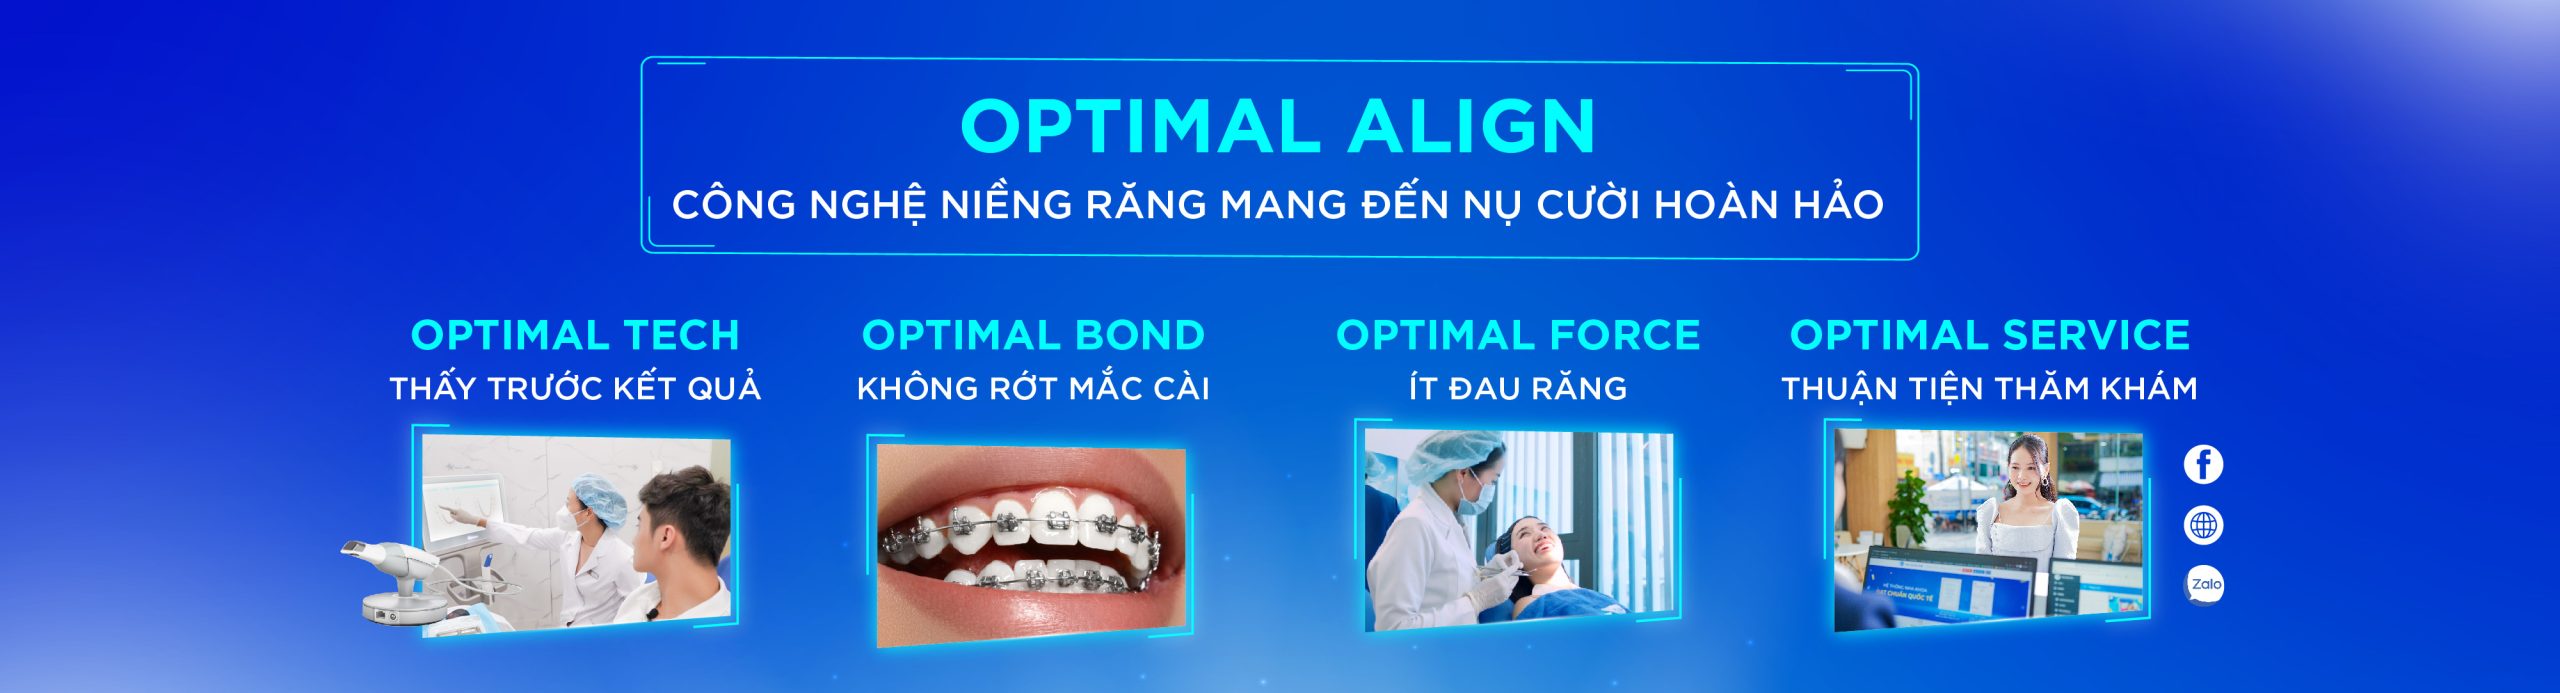 [Top Banner Desktop] Niềng răng tại Nha Khoa Kim giá bao nhiêu?